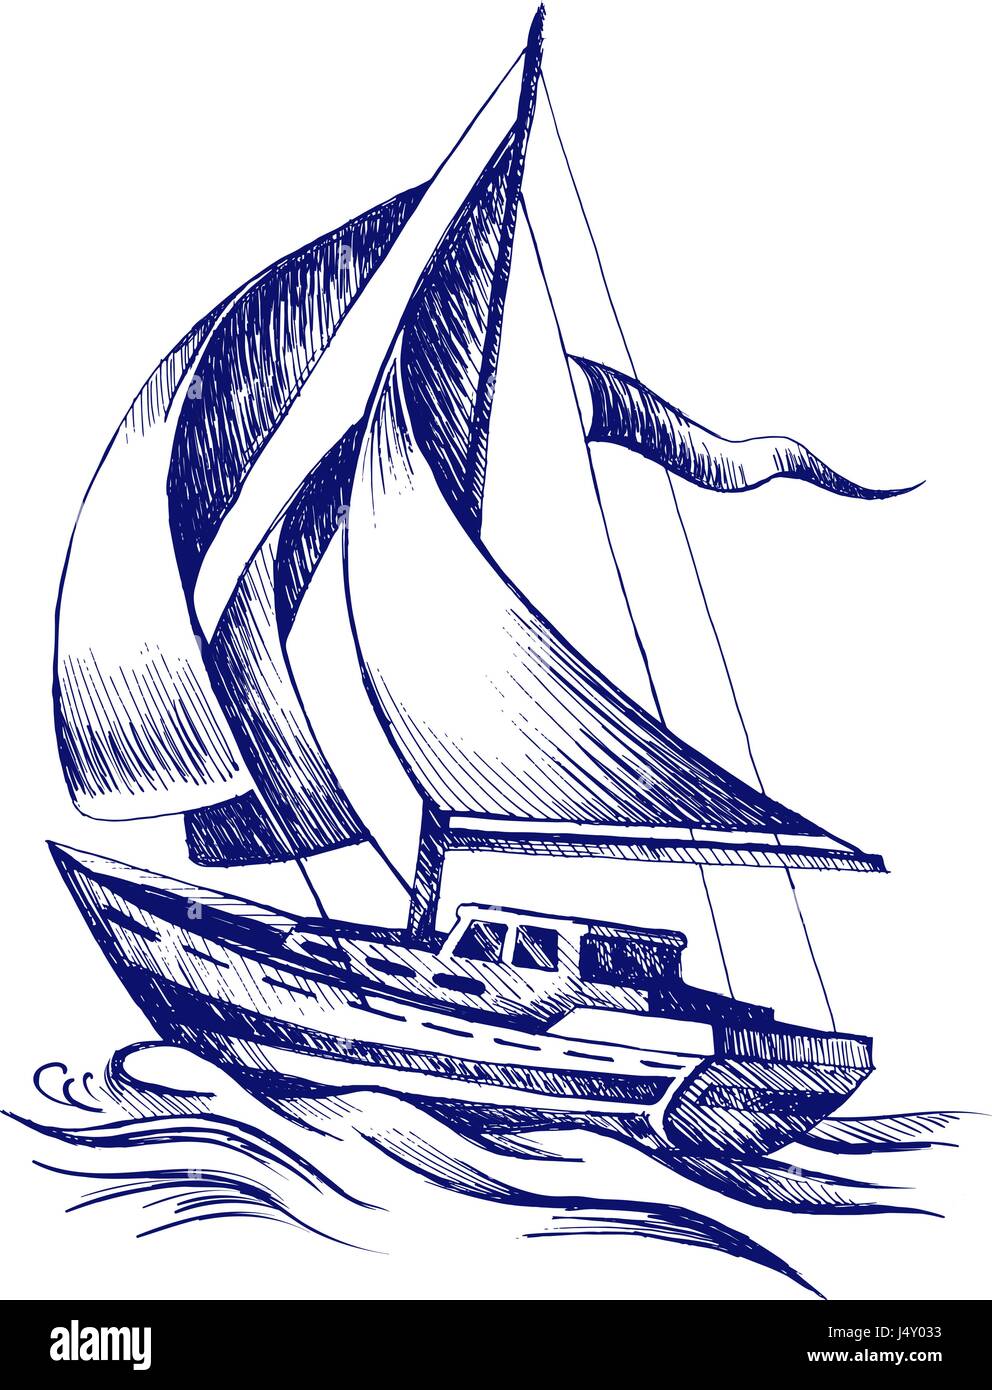 Segelboot mit einer Fahne Stock-Vektorgrafik - Alamy